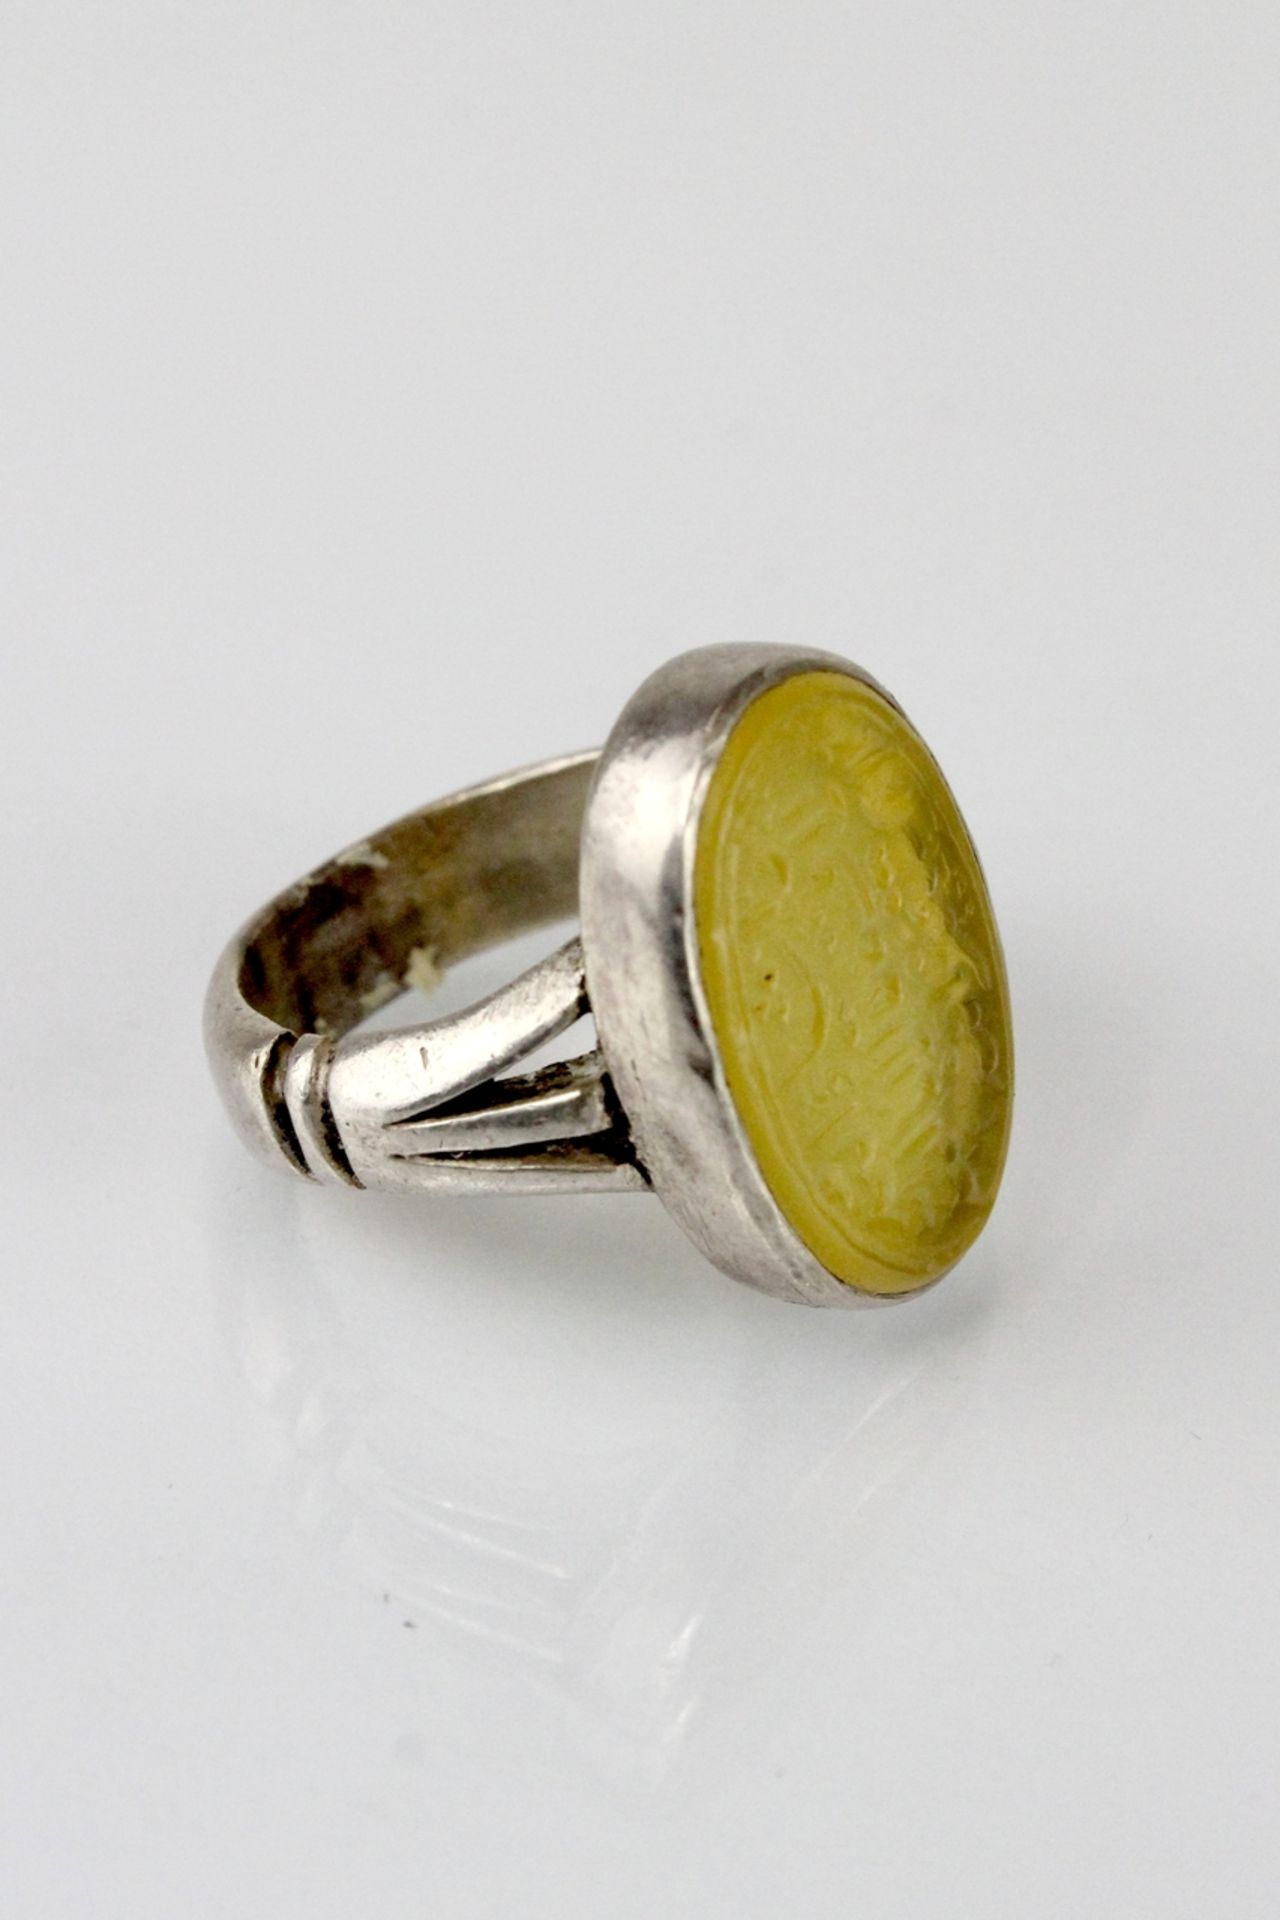 Osmanischer Silberring mit geschnittenem gelben Carneol - Image 2 of 2